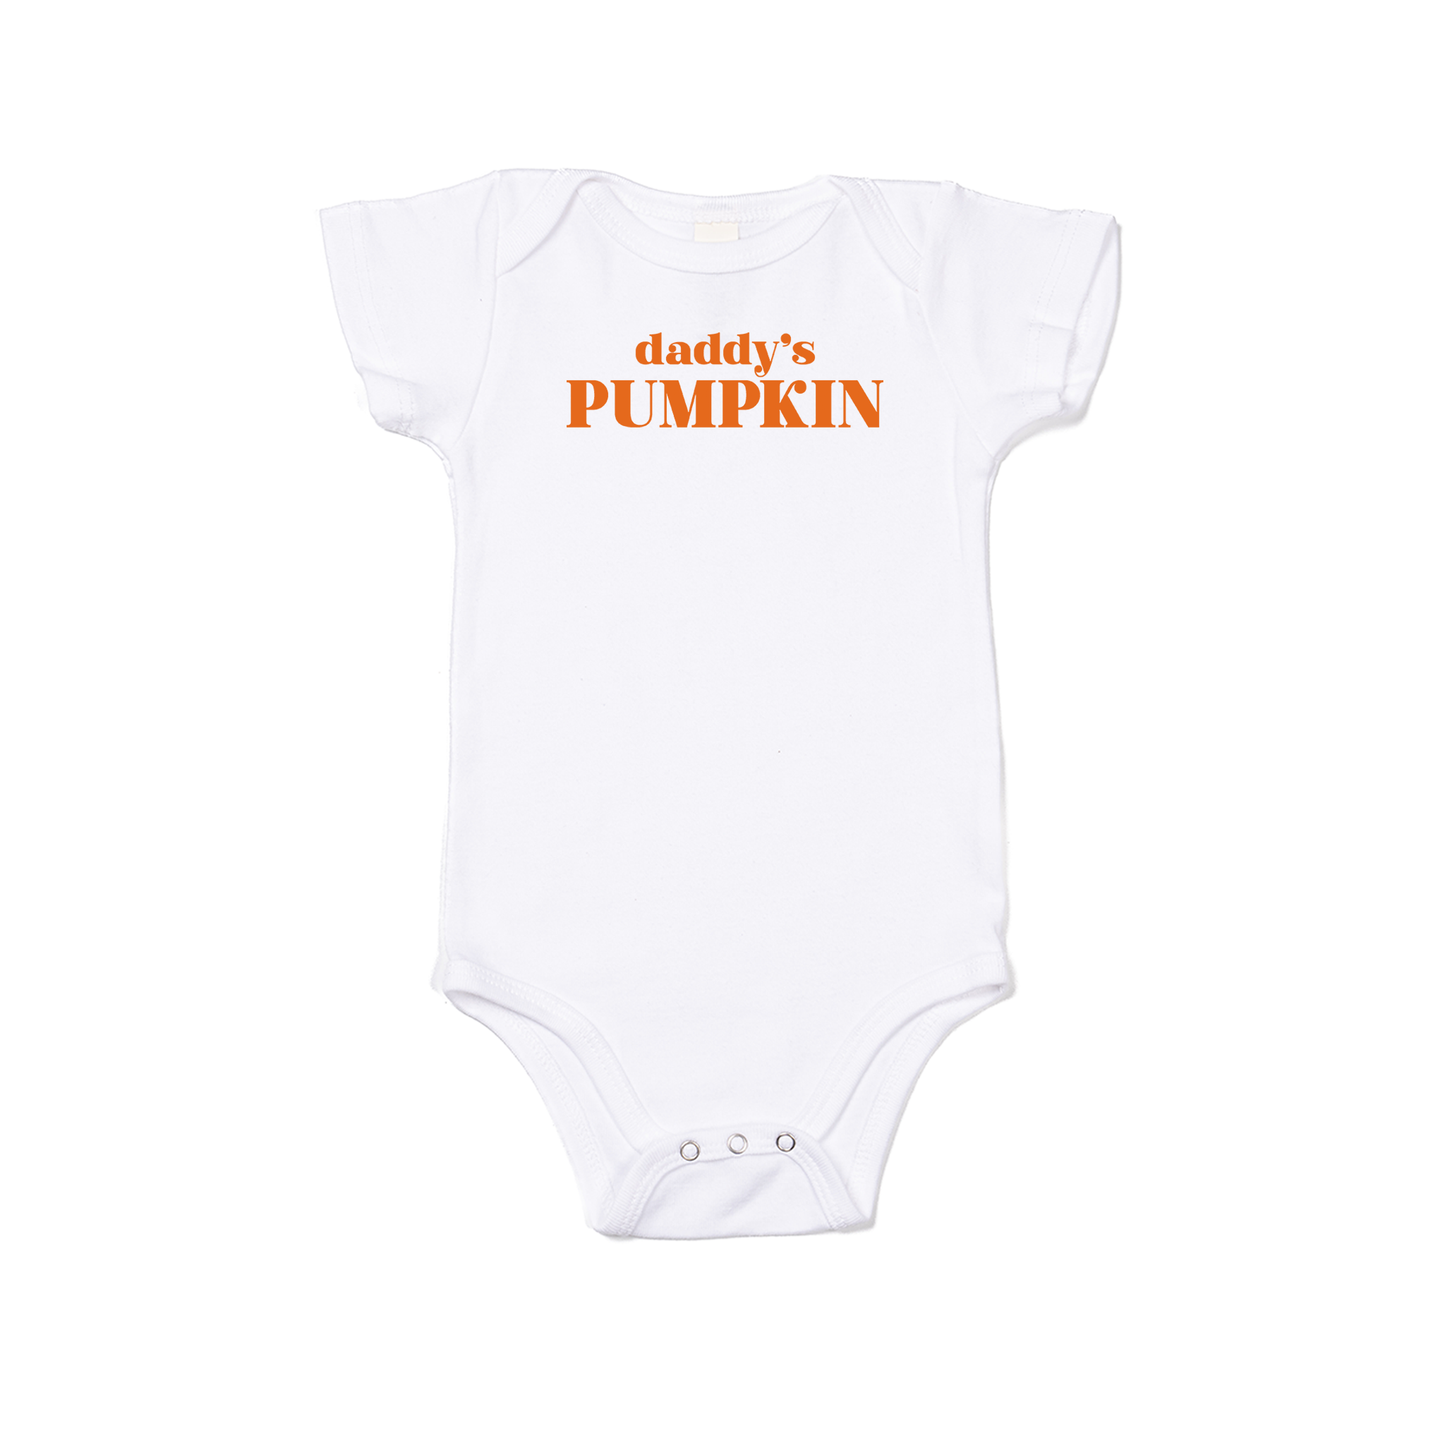 Daddy's Pumpkin - Bodysuit (White, Short Sleeve)